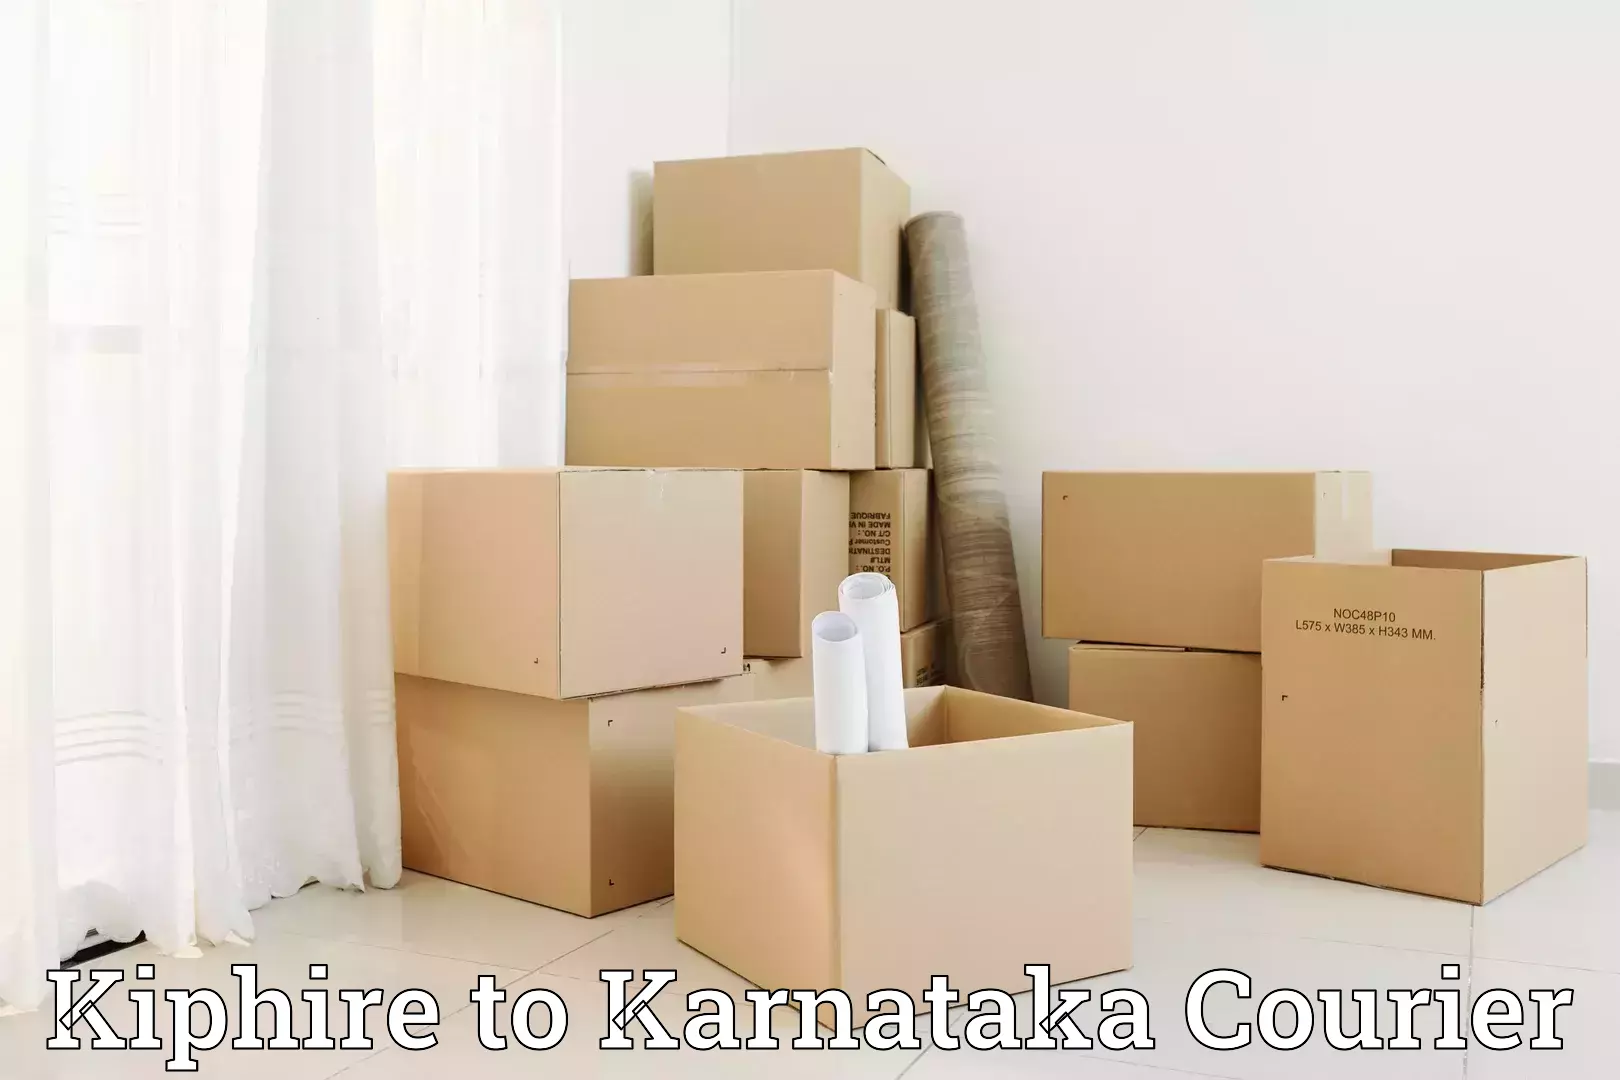 Furniture transport experts Kiphire to Karnataka